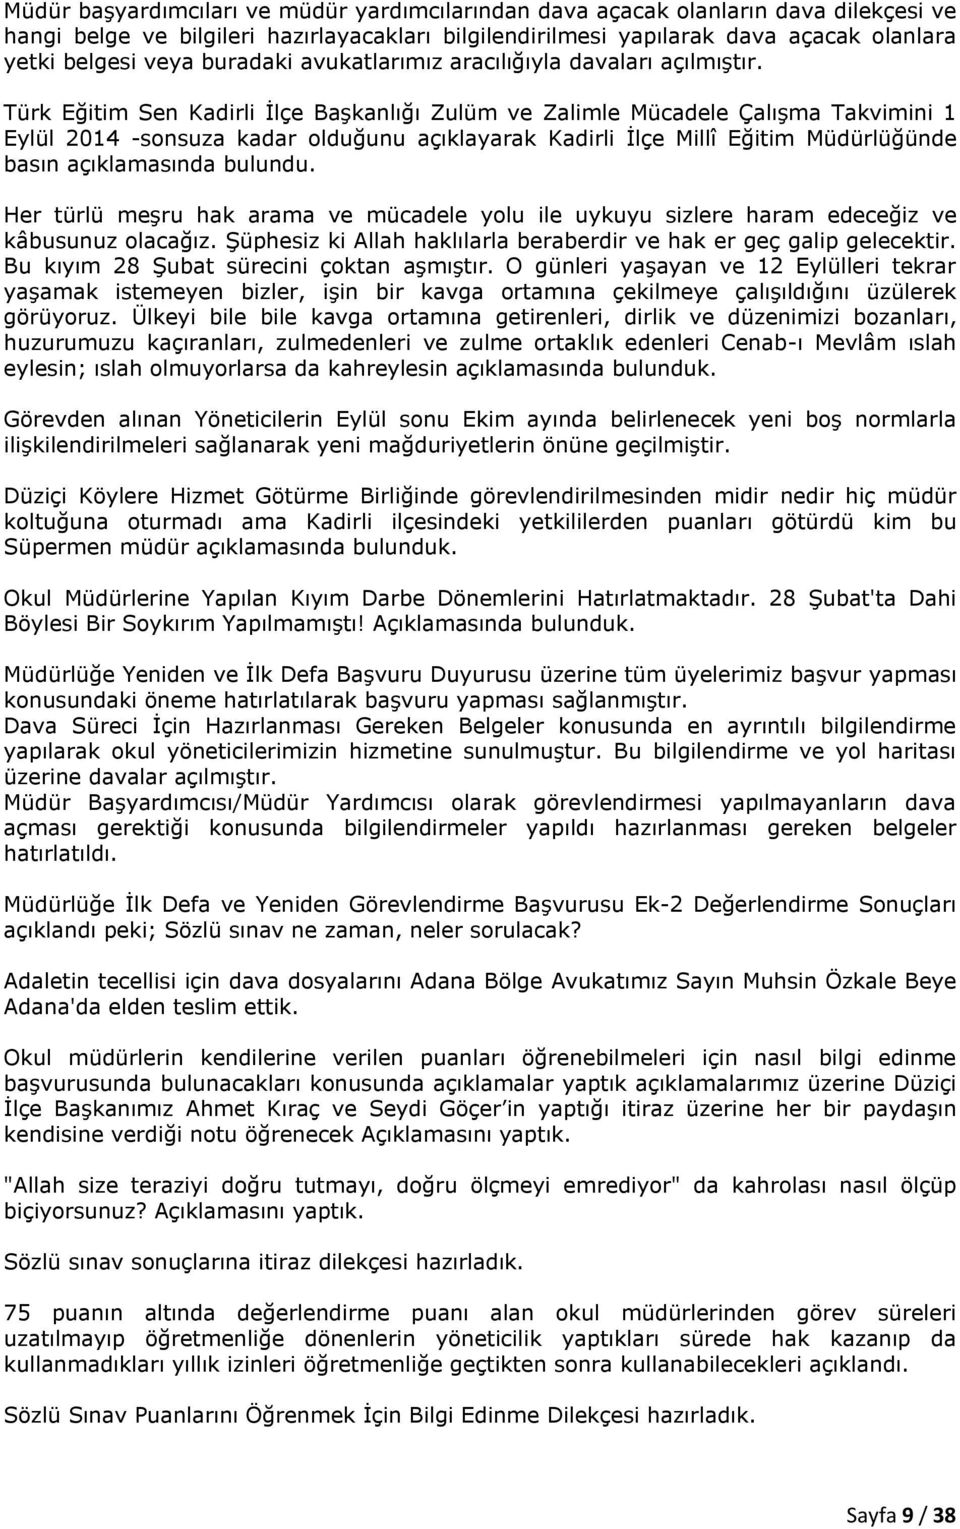 Türk Eğitim Sen Kadirli İlçe Başkanlığı Zulüm ve Zalimle Mücadele Çalışma Takvimini 1 Eylül 2014 -sonsuza kadar olduğunu açıklayarak Kadirli İlçe Millî Eğitim Müdürlüğünde basın açıklamasında bulundu.